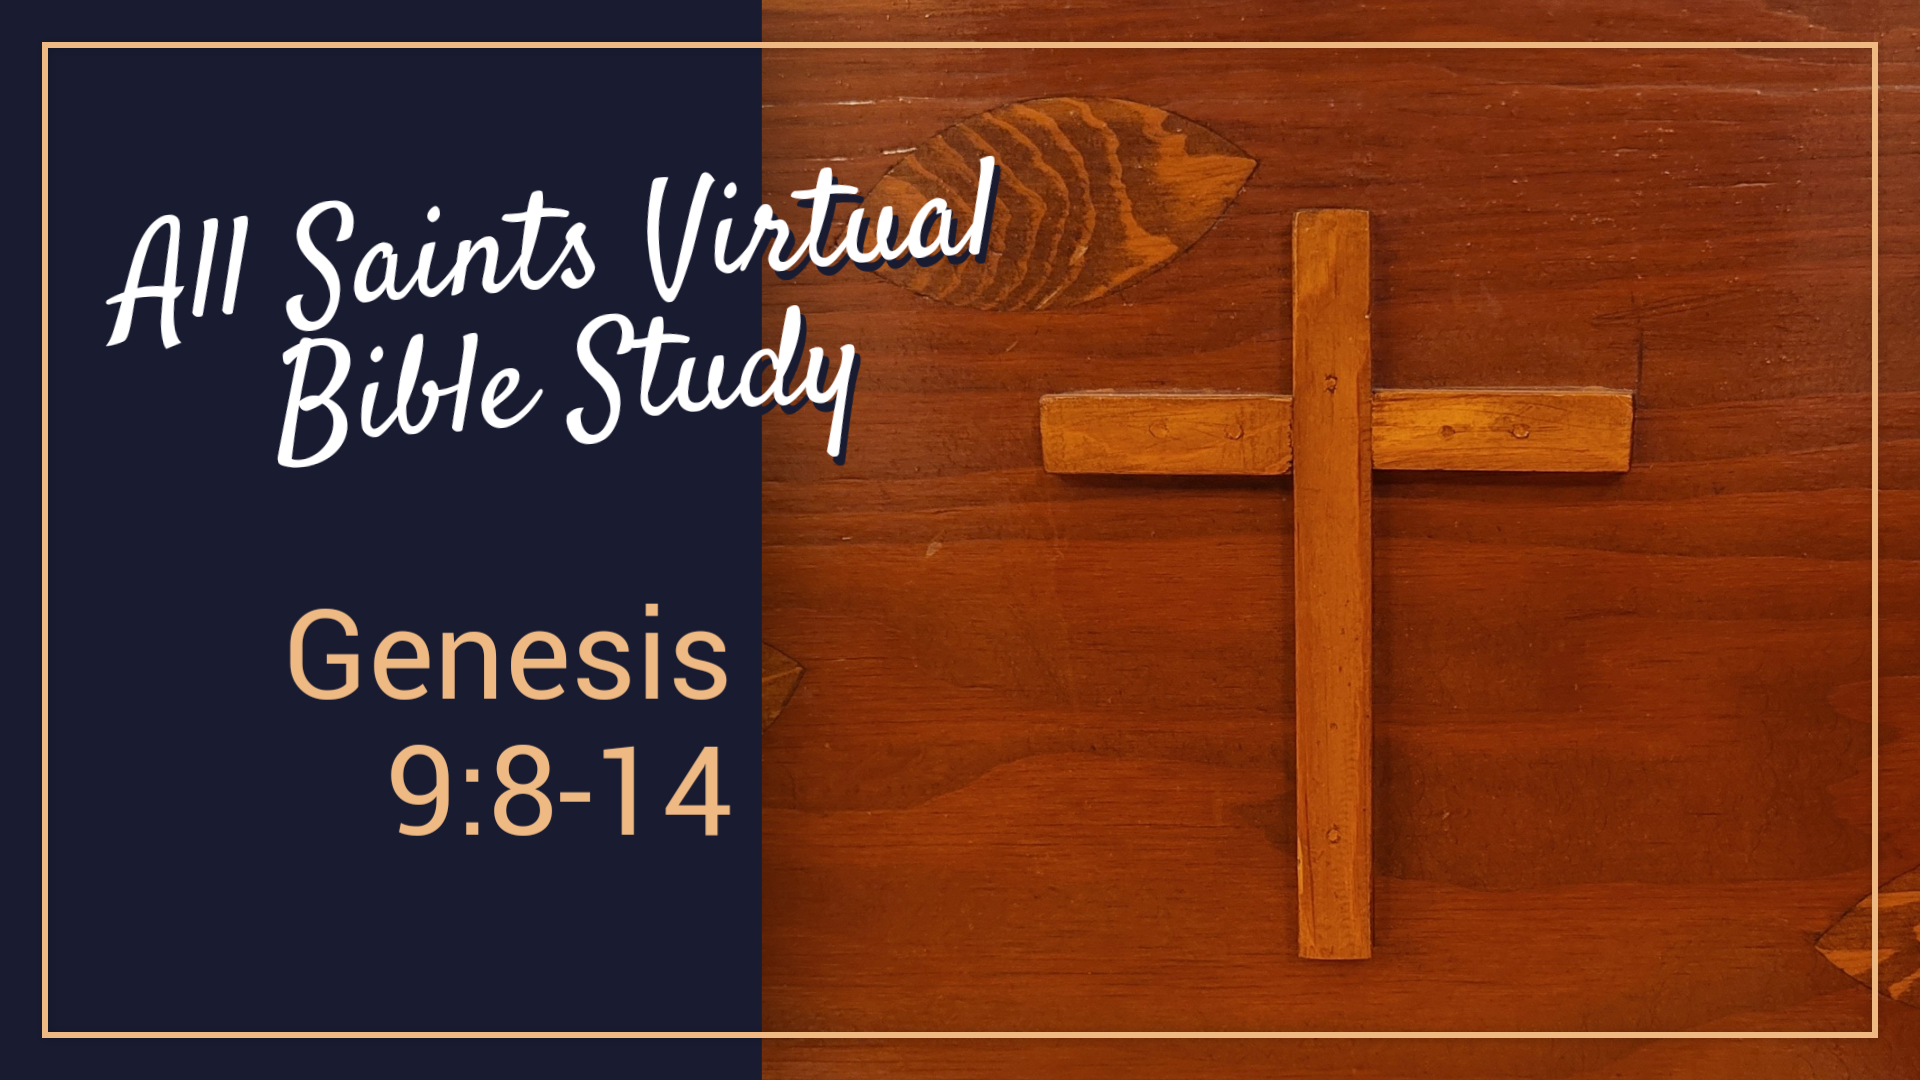 All Saints Virtual Bible Study - Genesis 9:8-14